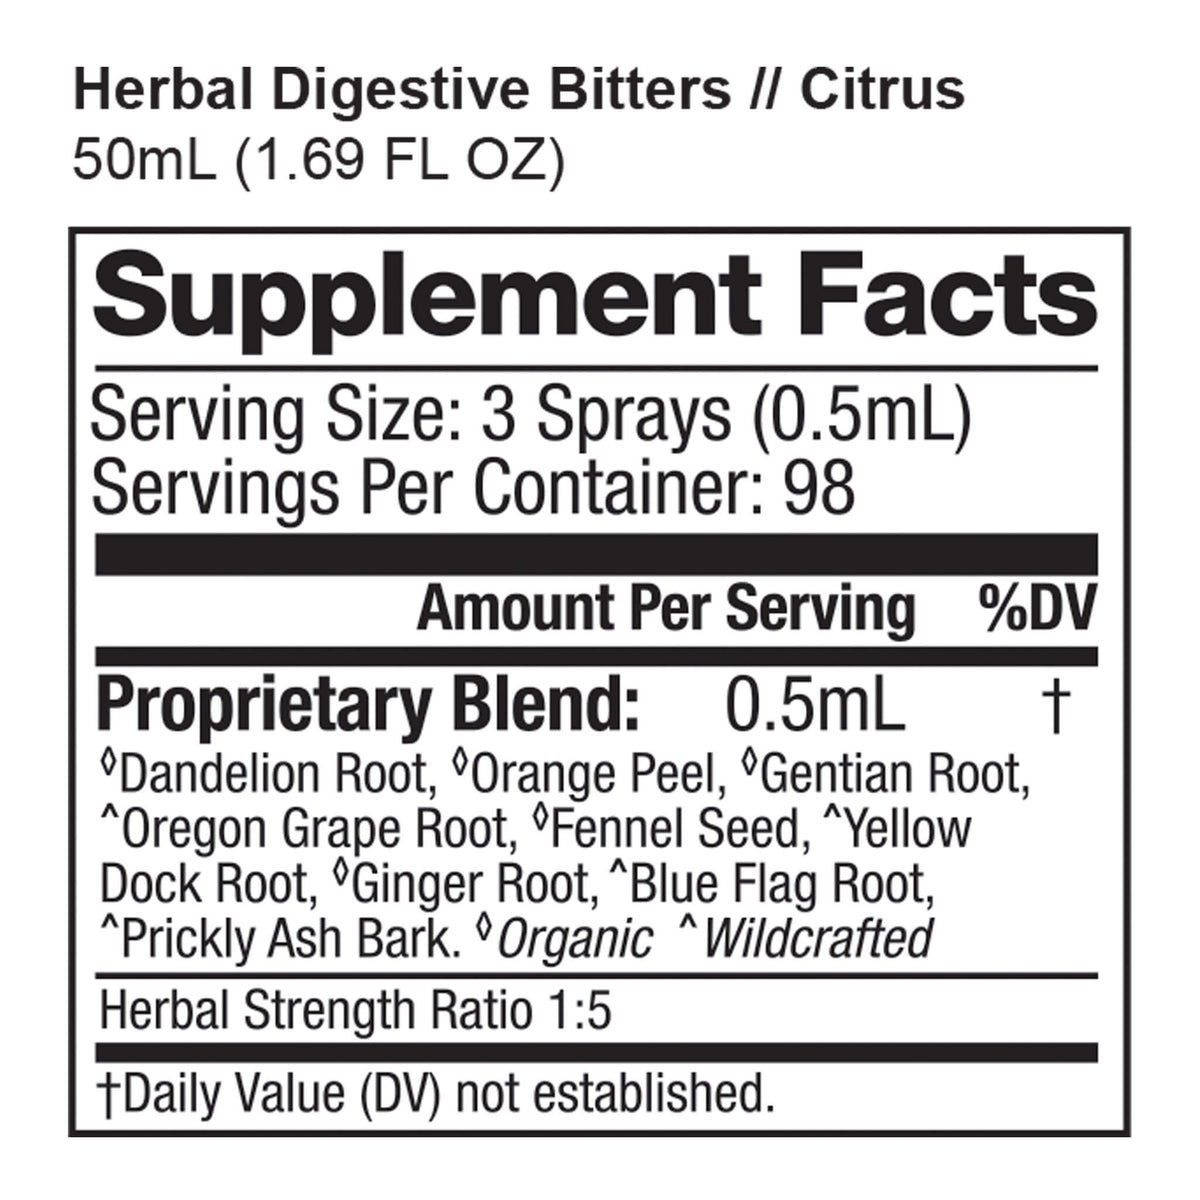 Herbal Digestive Bitters